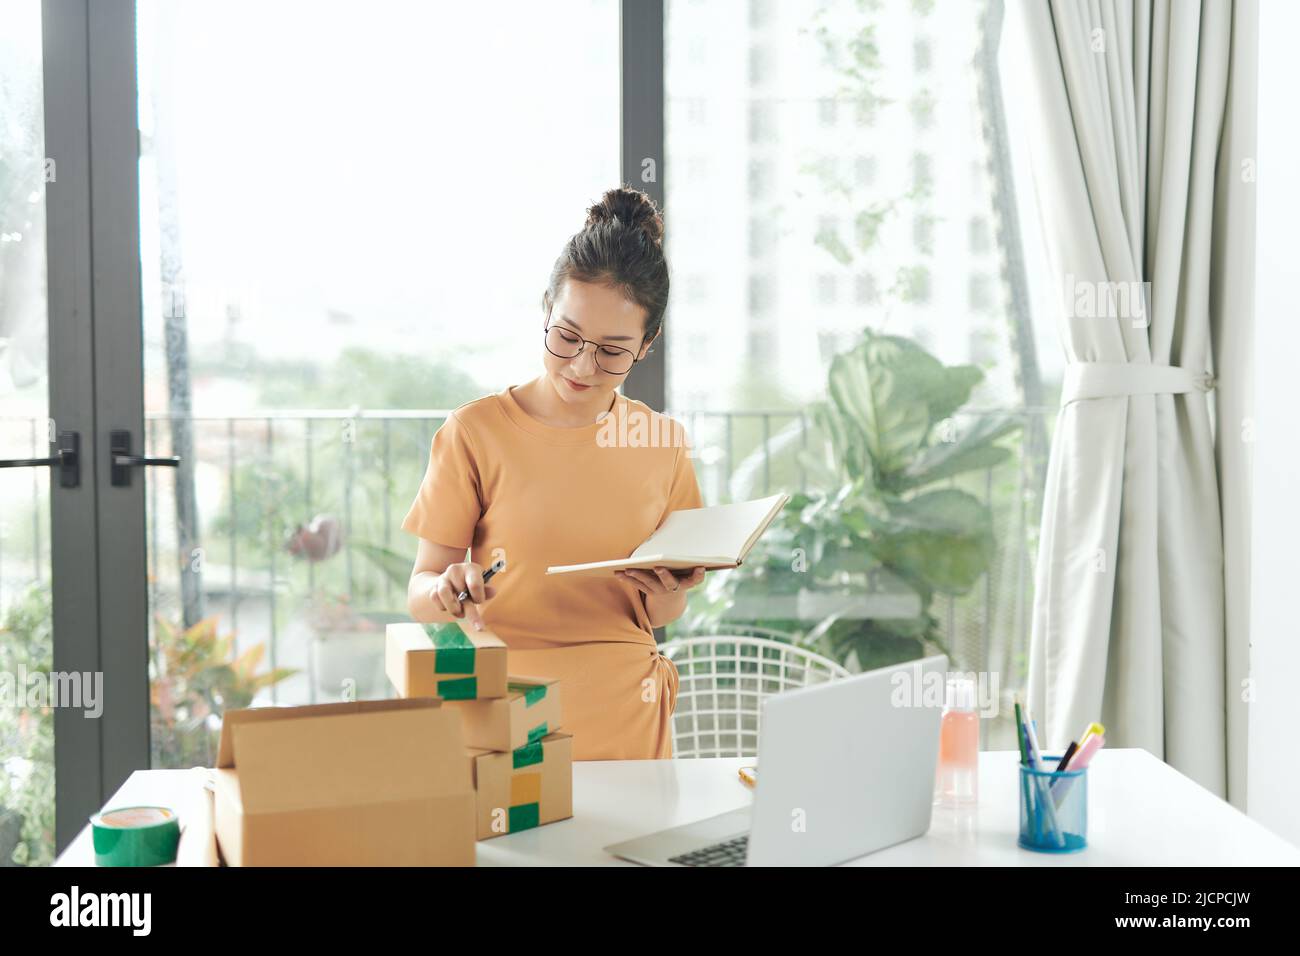 Privates Geschäftskonzept. Eine Frau, die mit einem Verpackungskarton für die Lieferung im Home-Office arbeitet. Stockfoto